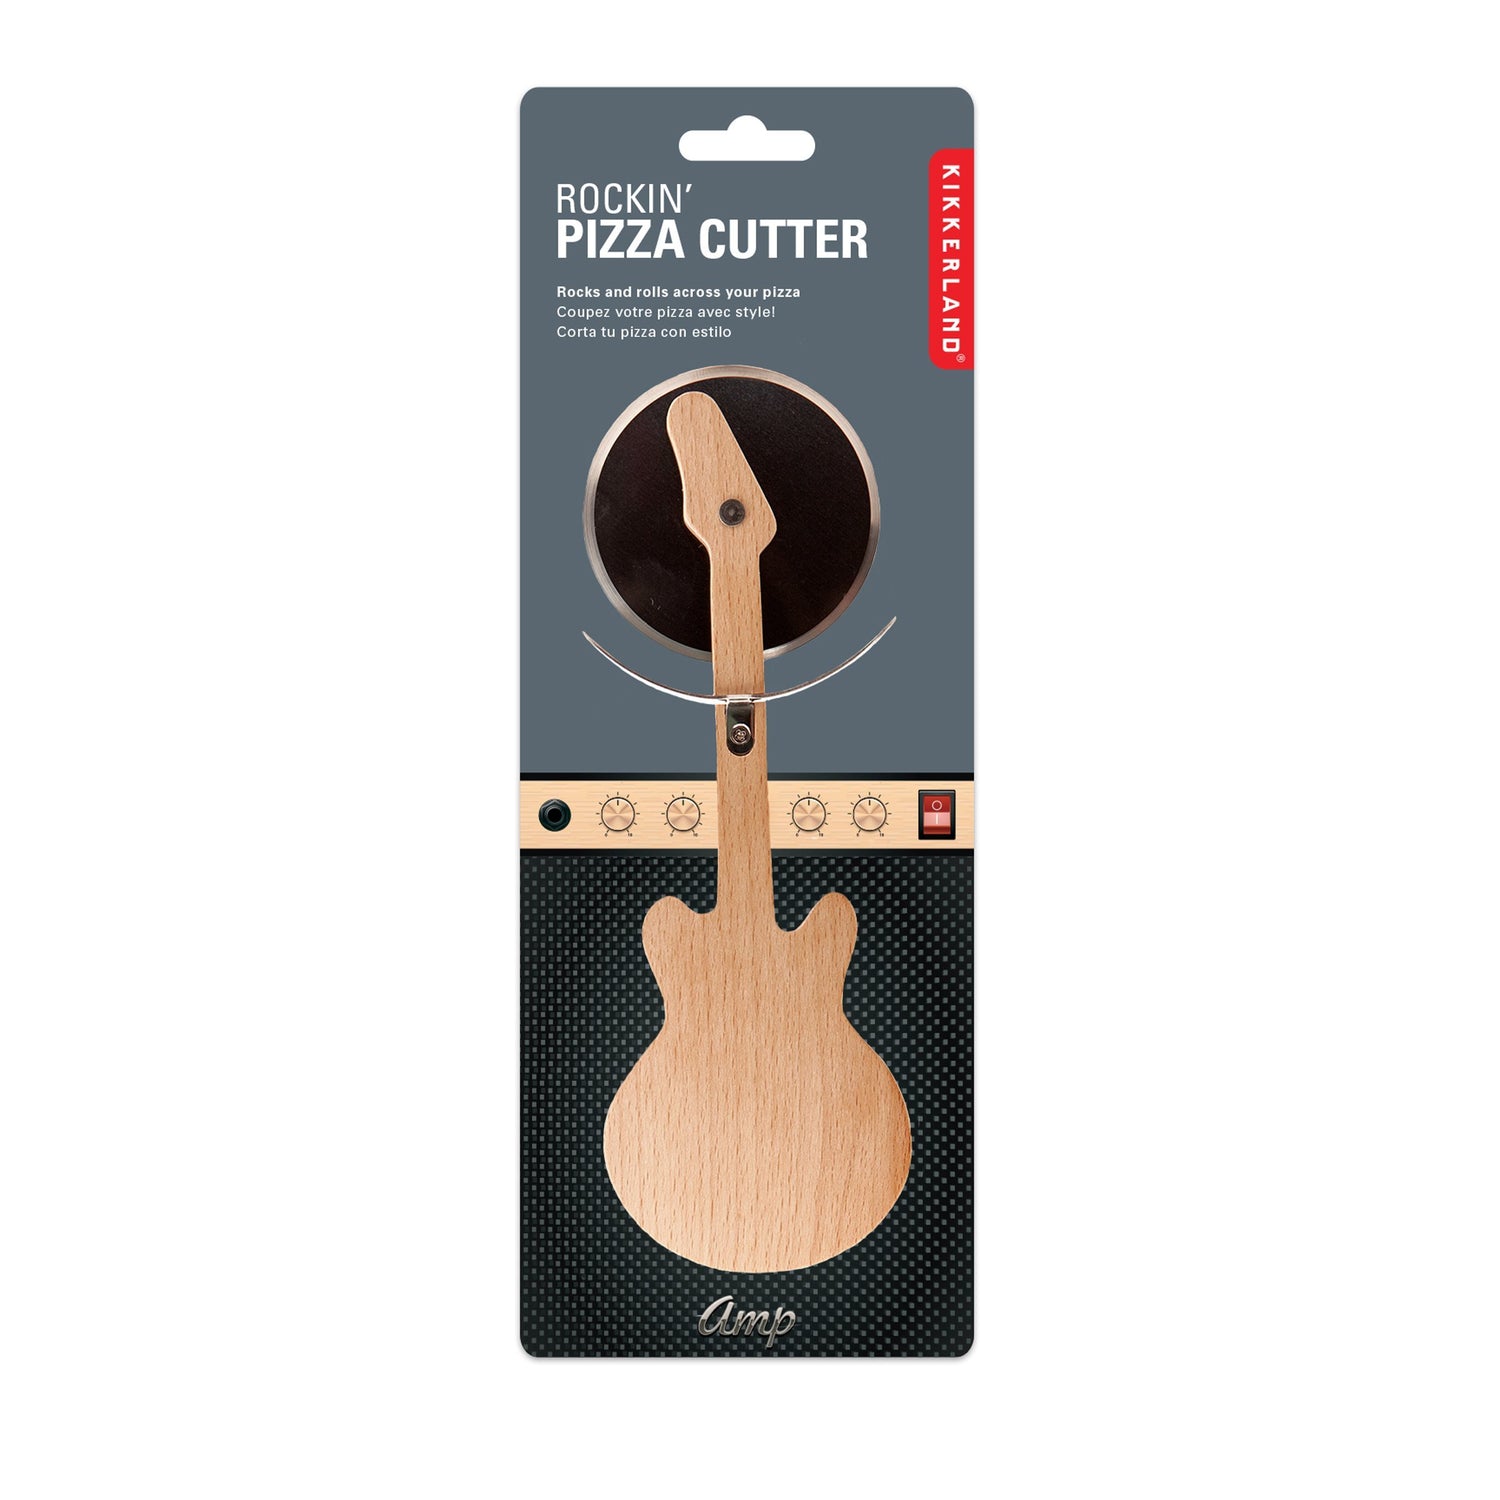 Pizza cutter chitarra